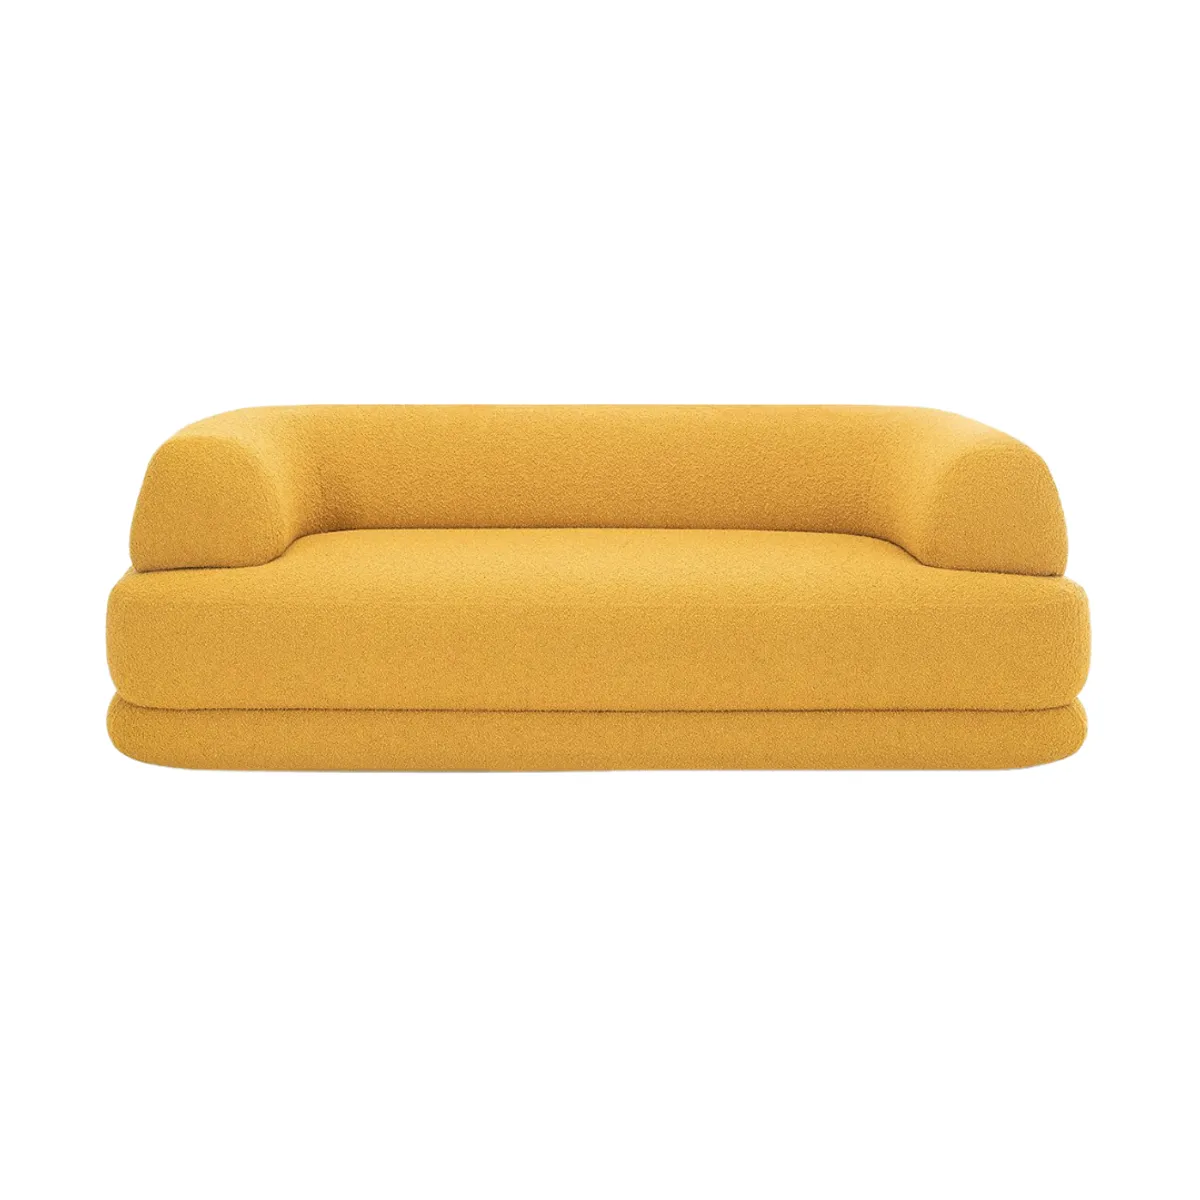 Putellas sofa 1